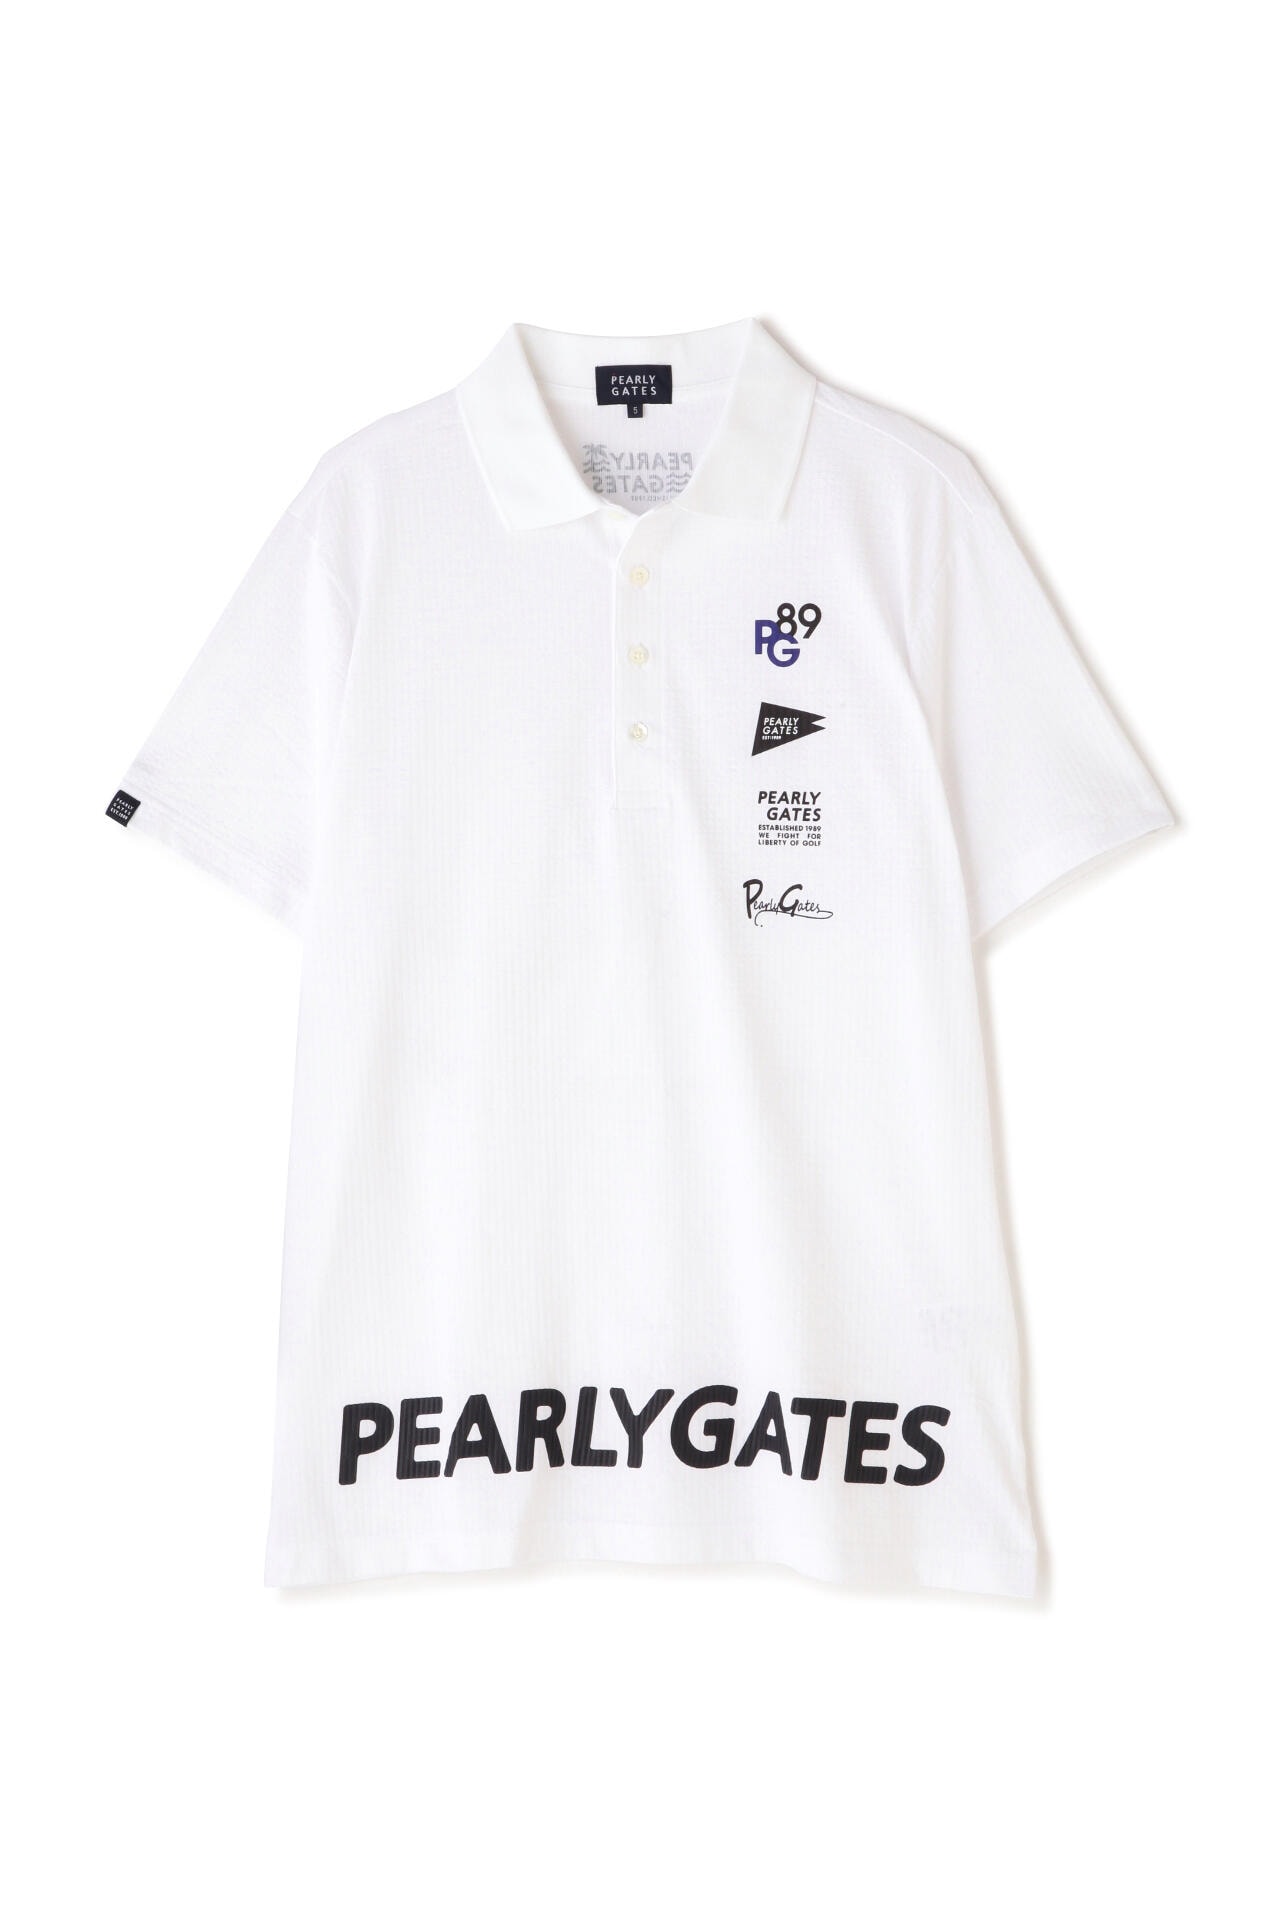 紫③ PEARLY GATES PLaY WitH COLOR Tシャツ サイズ5 - 通販